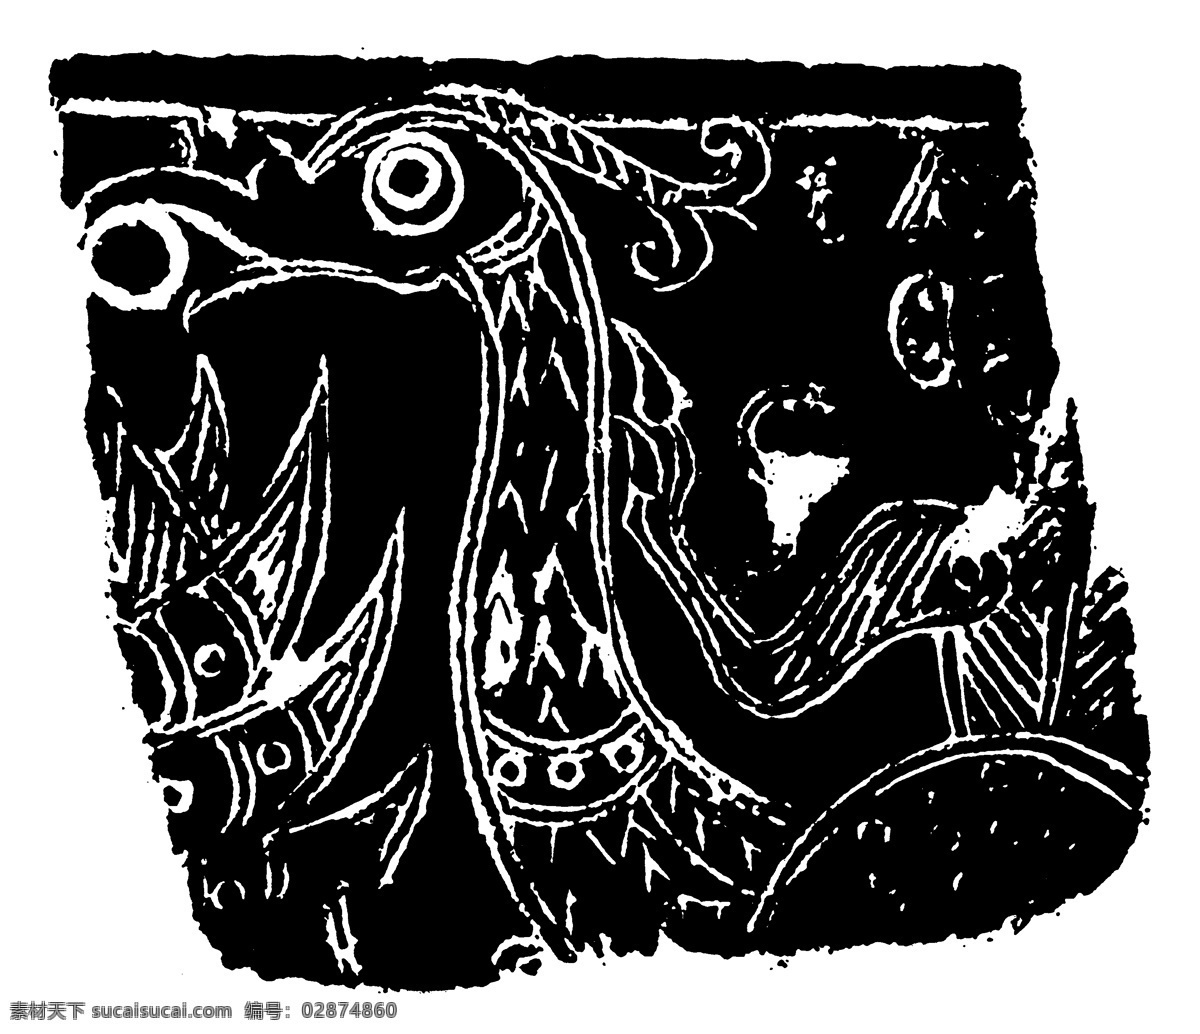 器物图案 秦汉时期图案 中国传统图案 图案006 图案 设计素材 装饰图案 书画美术 黑色